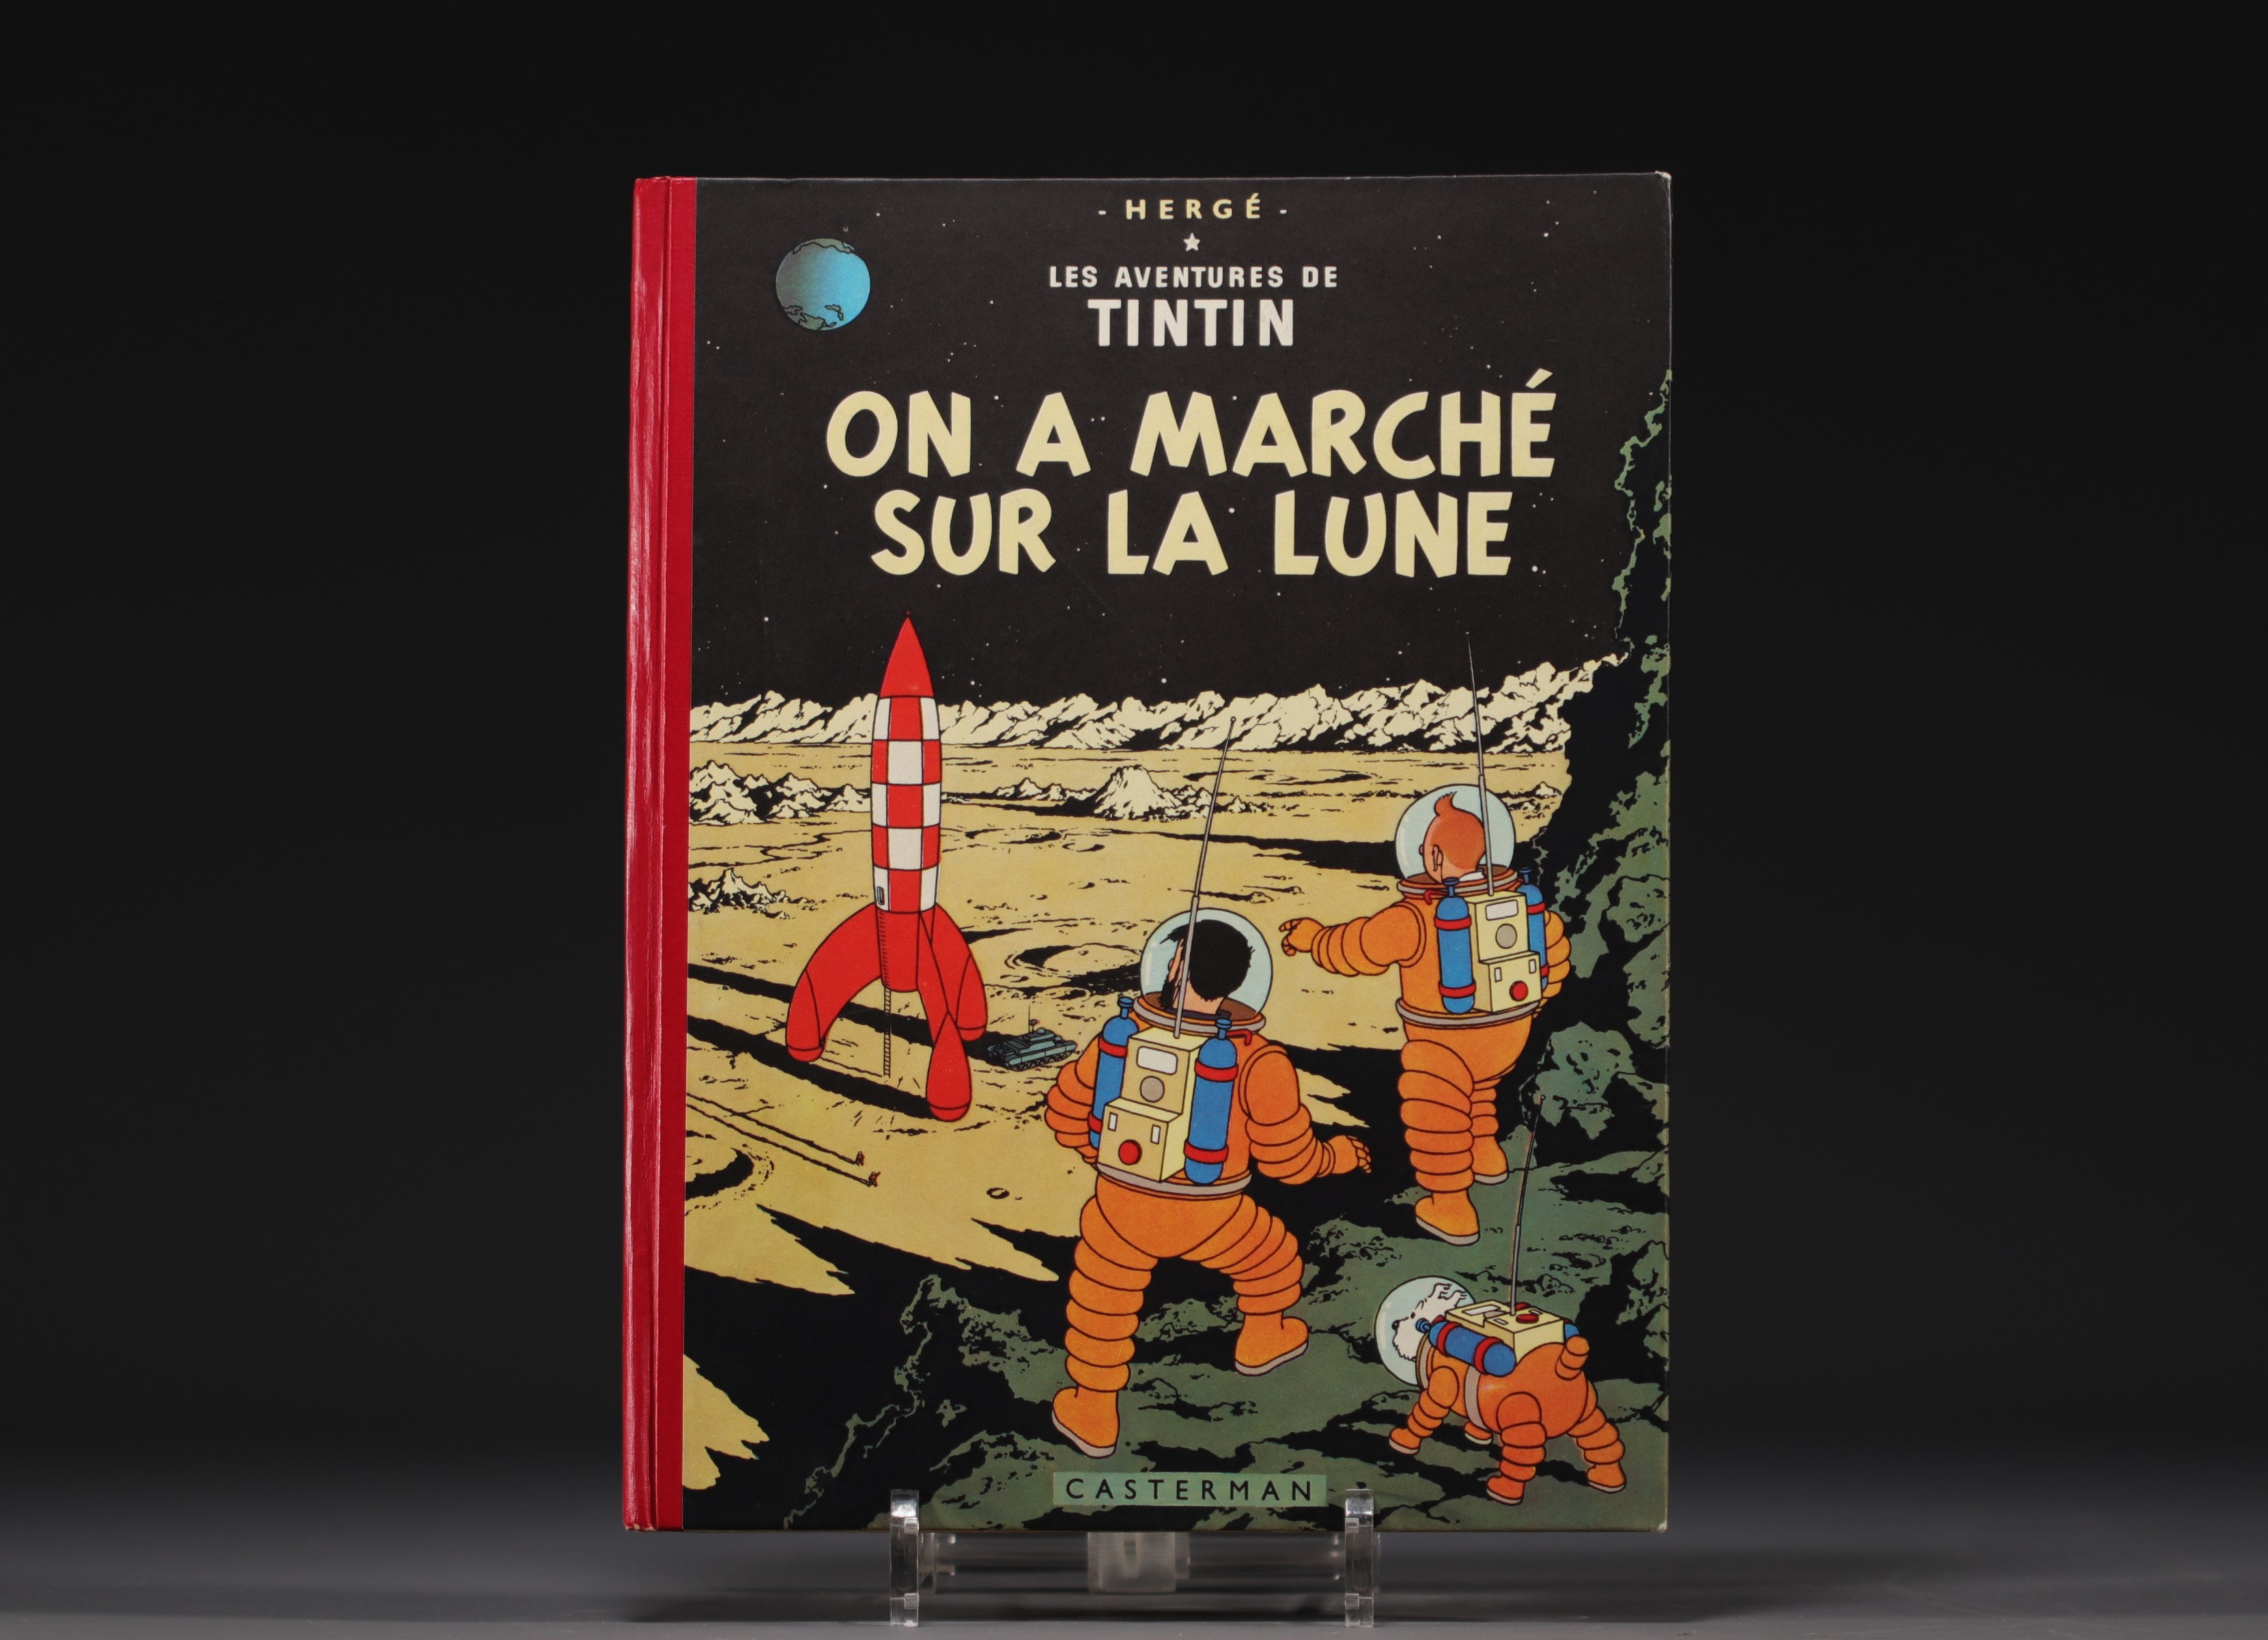 Tintin - Album "On a marche sur la lune" 1954 edition.